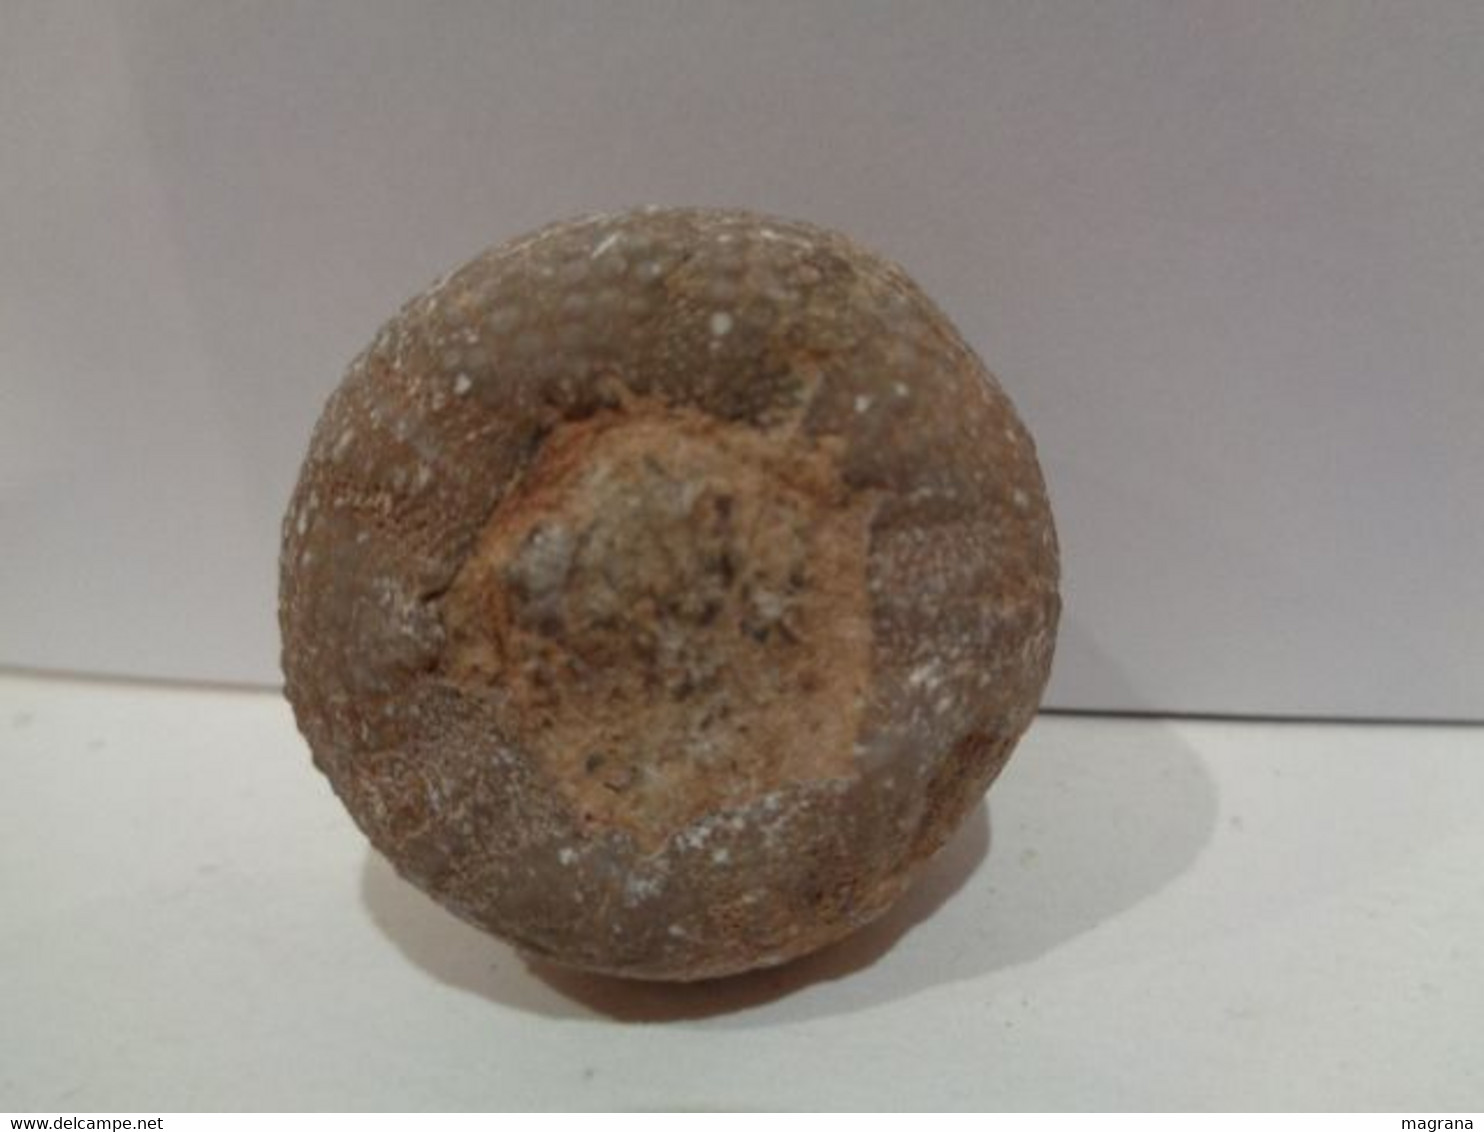 Fossil Sea Urchin. Psephechinus Michelini. Age: Jurassic, Bathonian. 175 Million Years. Gourama, Marruecos. - Fossilien